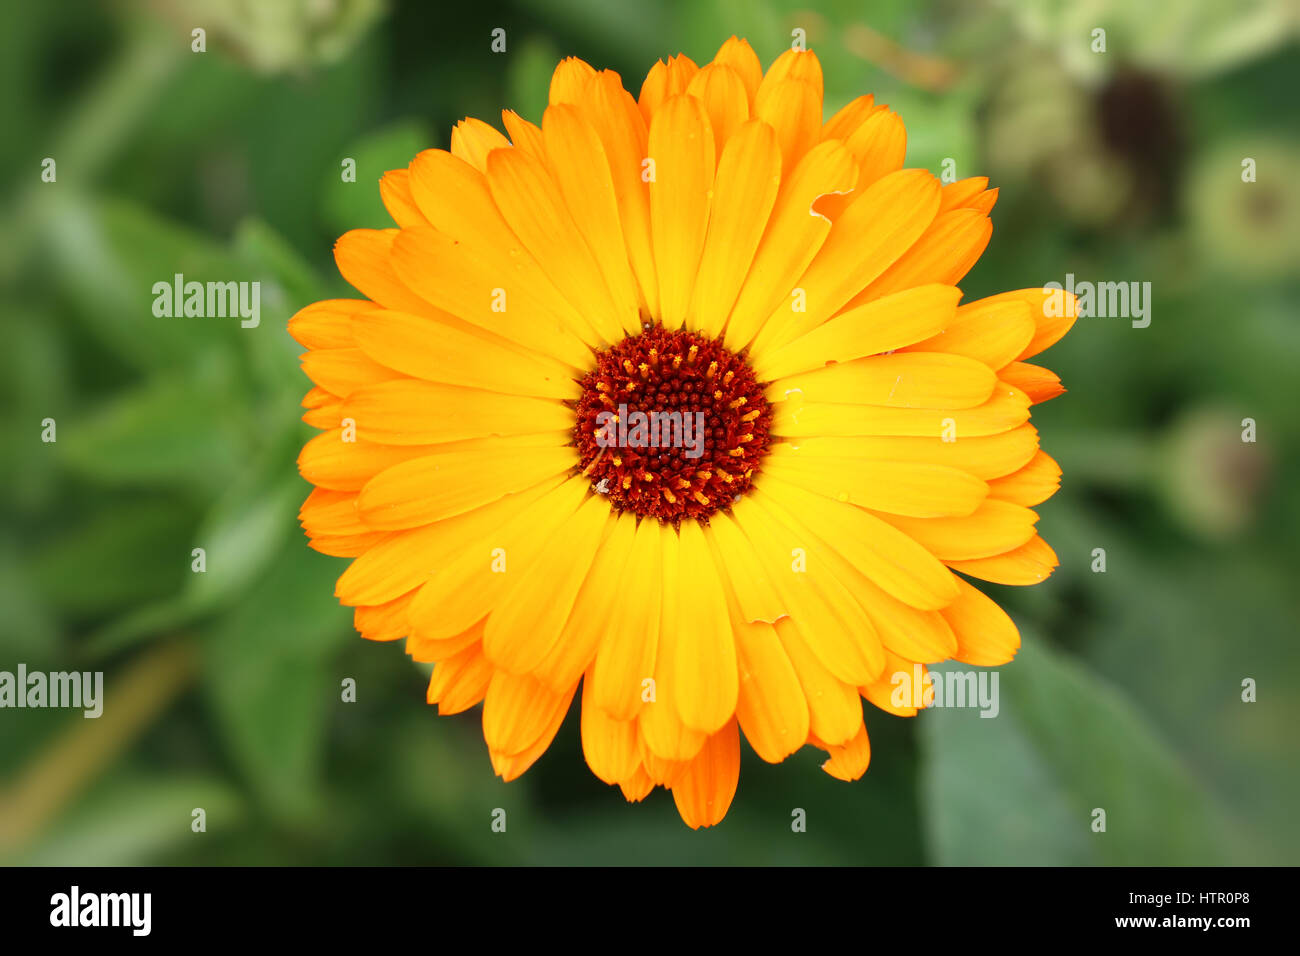 Detalle de la flor de la caléndula - hierba medicinal Foto de stock